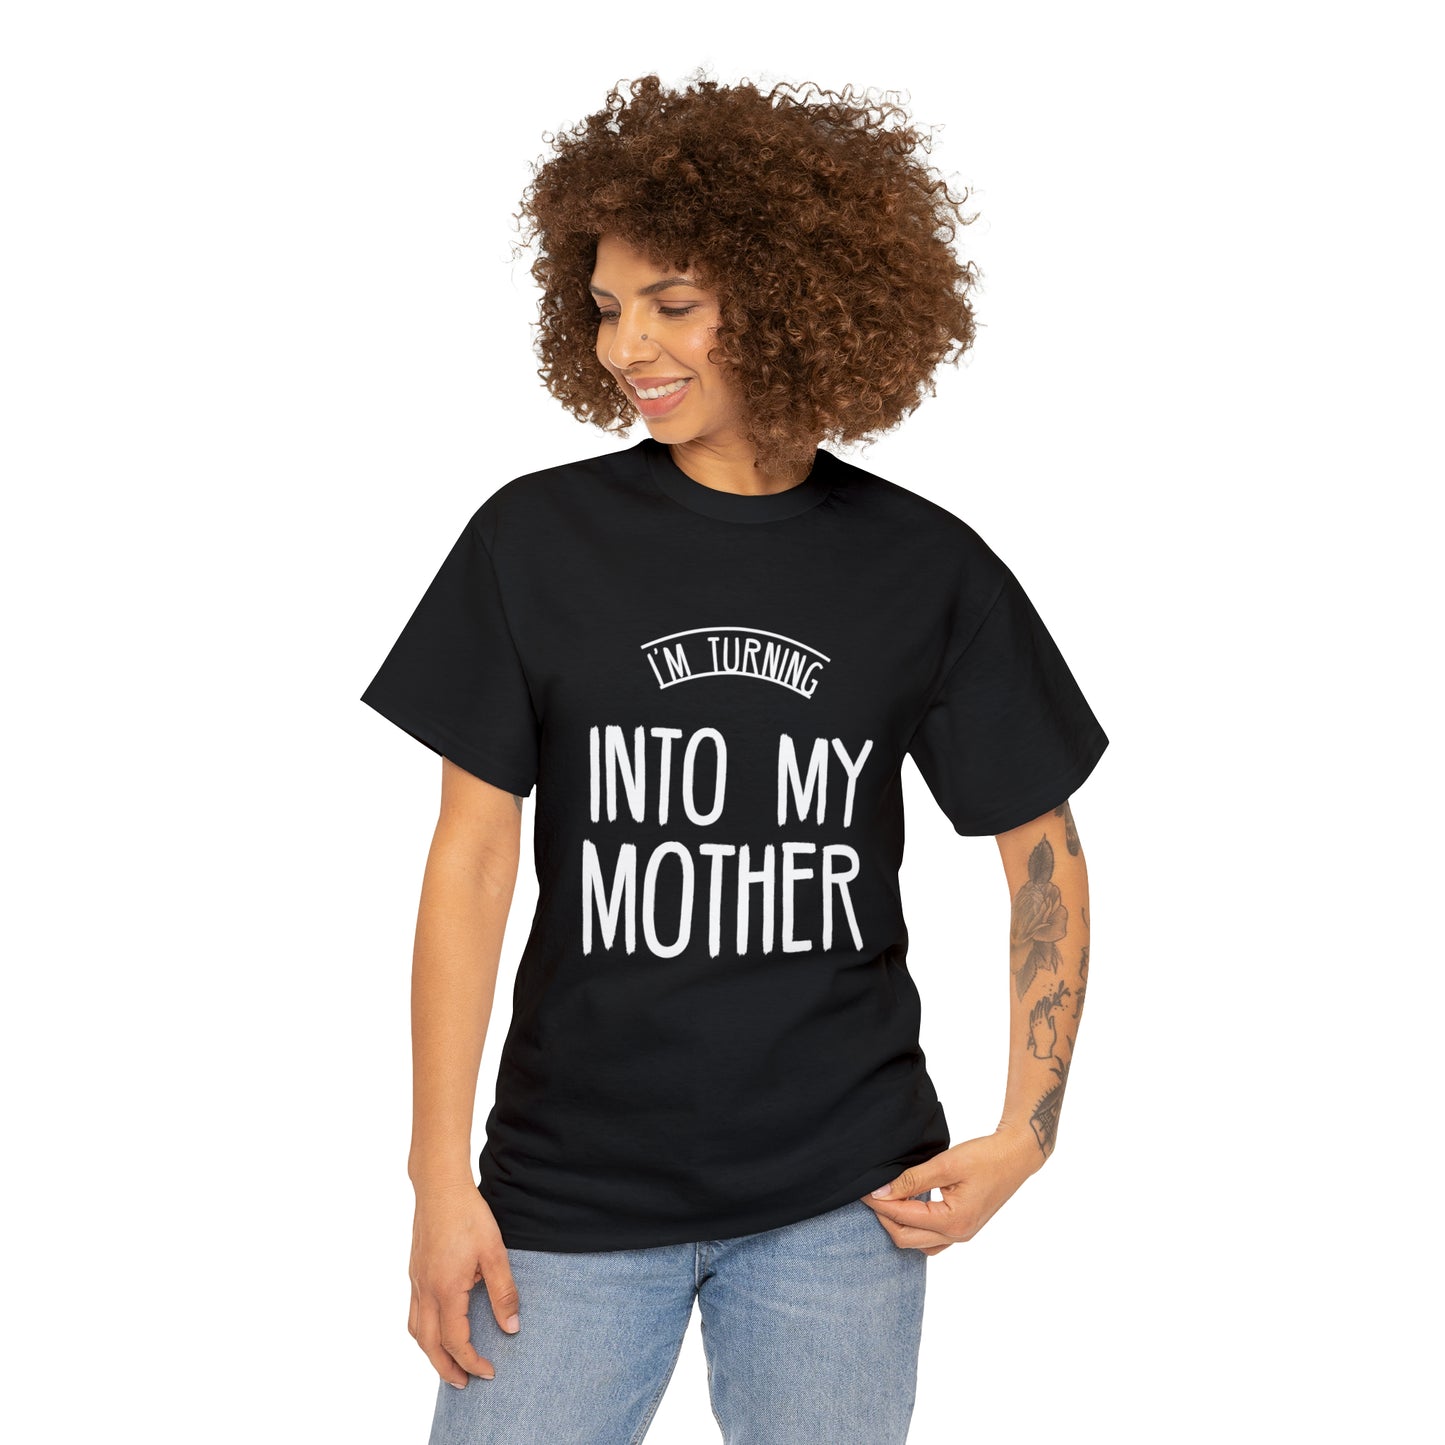 Nostalgic mom-themed apparel